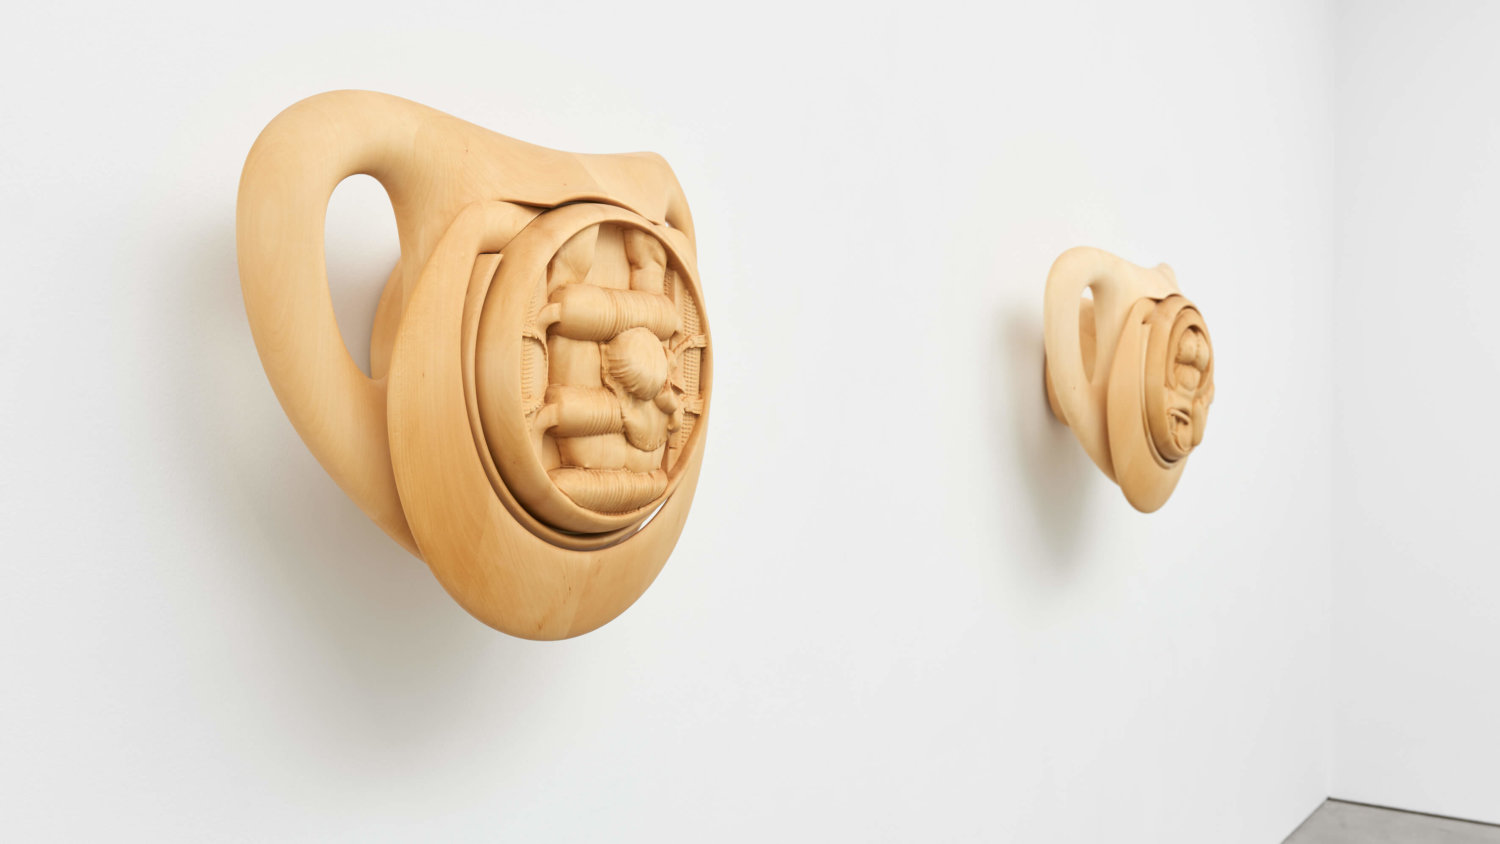 Zwei hölzerne Skulpturen der Künstlerin Anna Uddenberg stellen zwei überdimensionale Schnuller dar, in denen muskulöse Körper in Babykleidung geschnitzt sind.